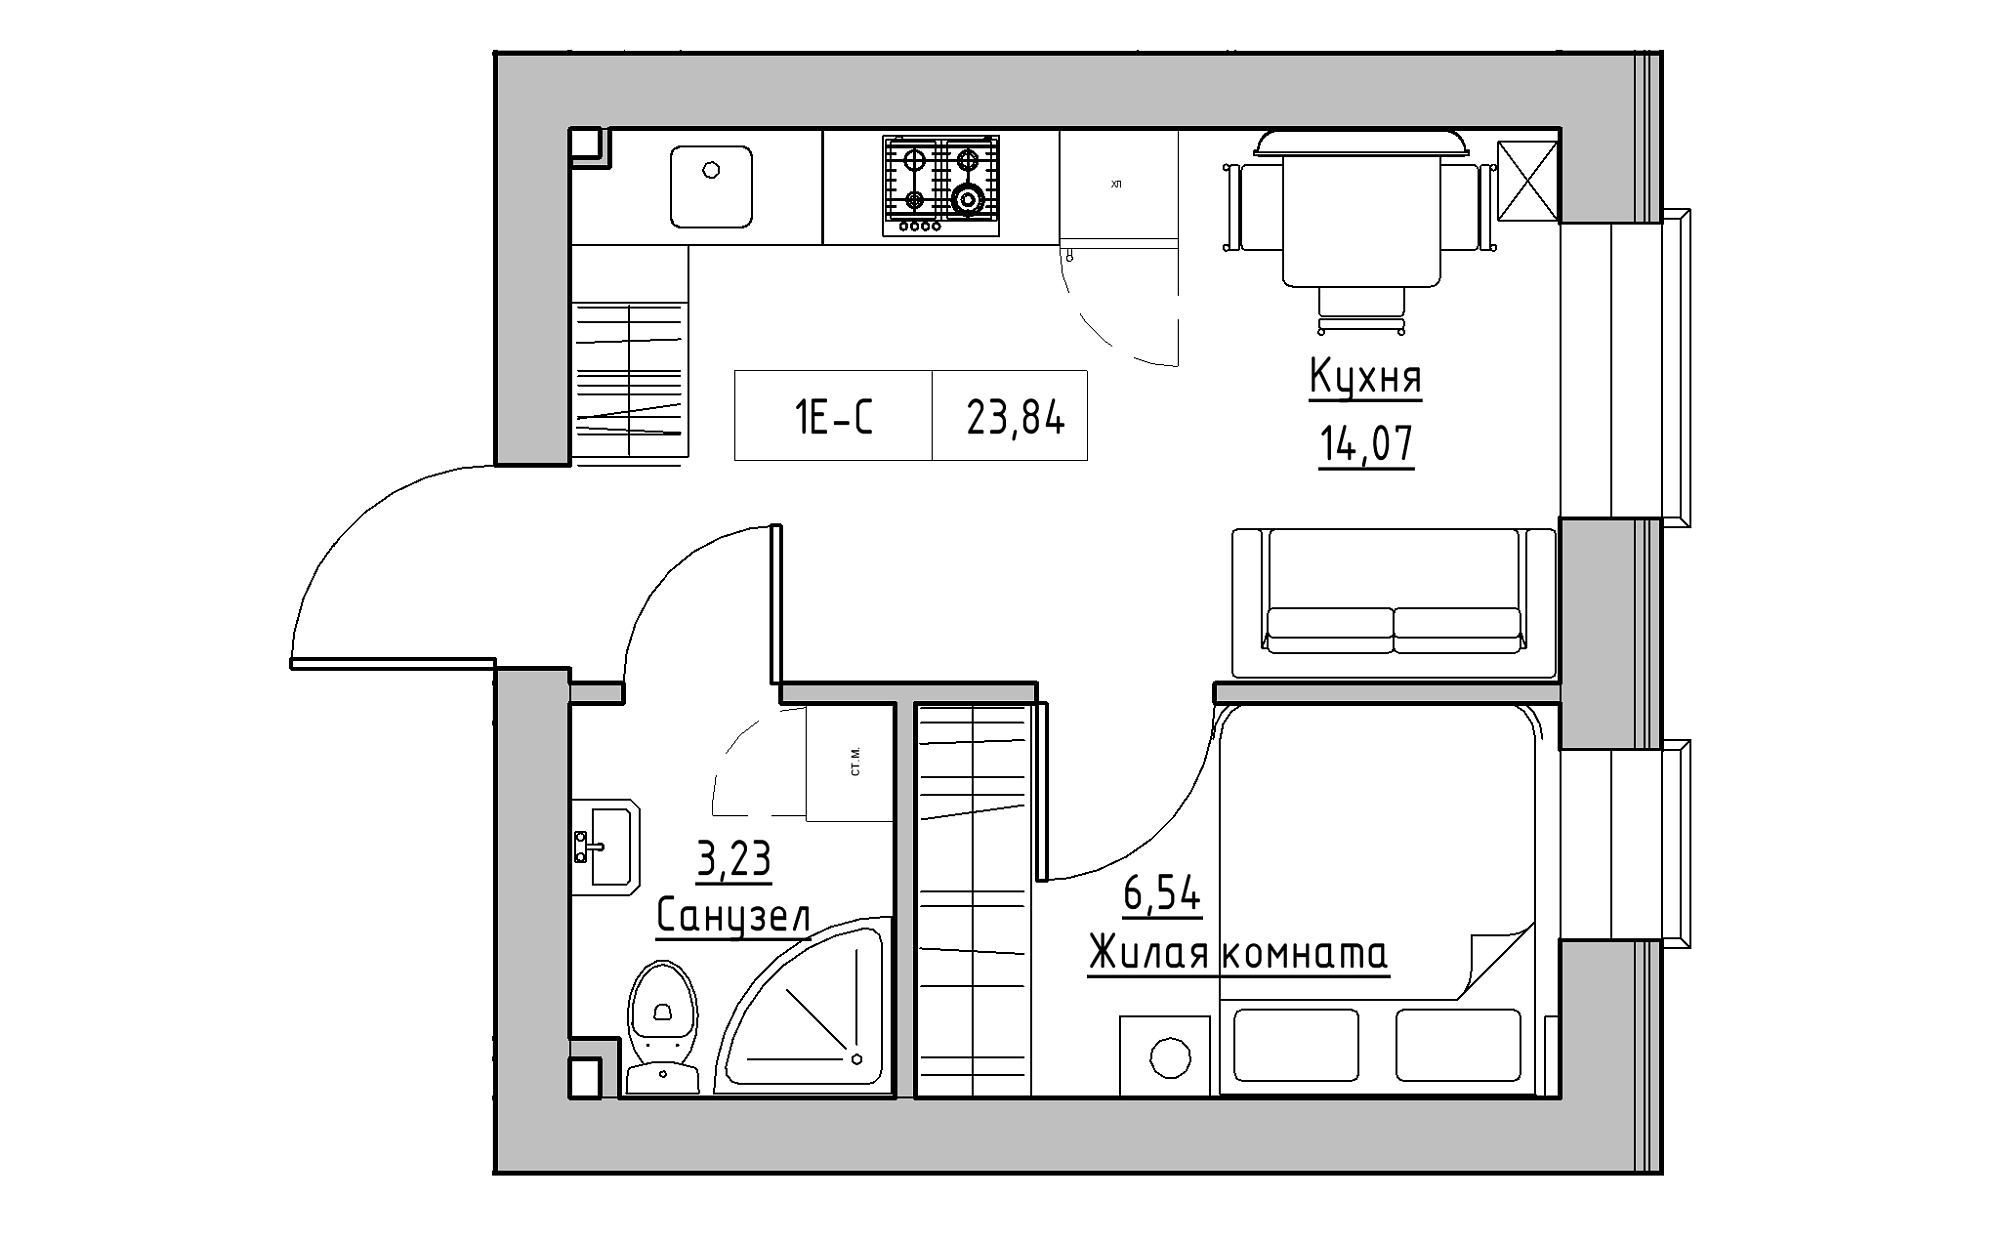 Планування 1-к квартира площею 23.84м2, KS-022-03/0011.